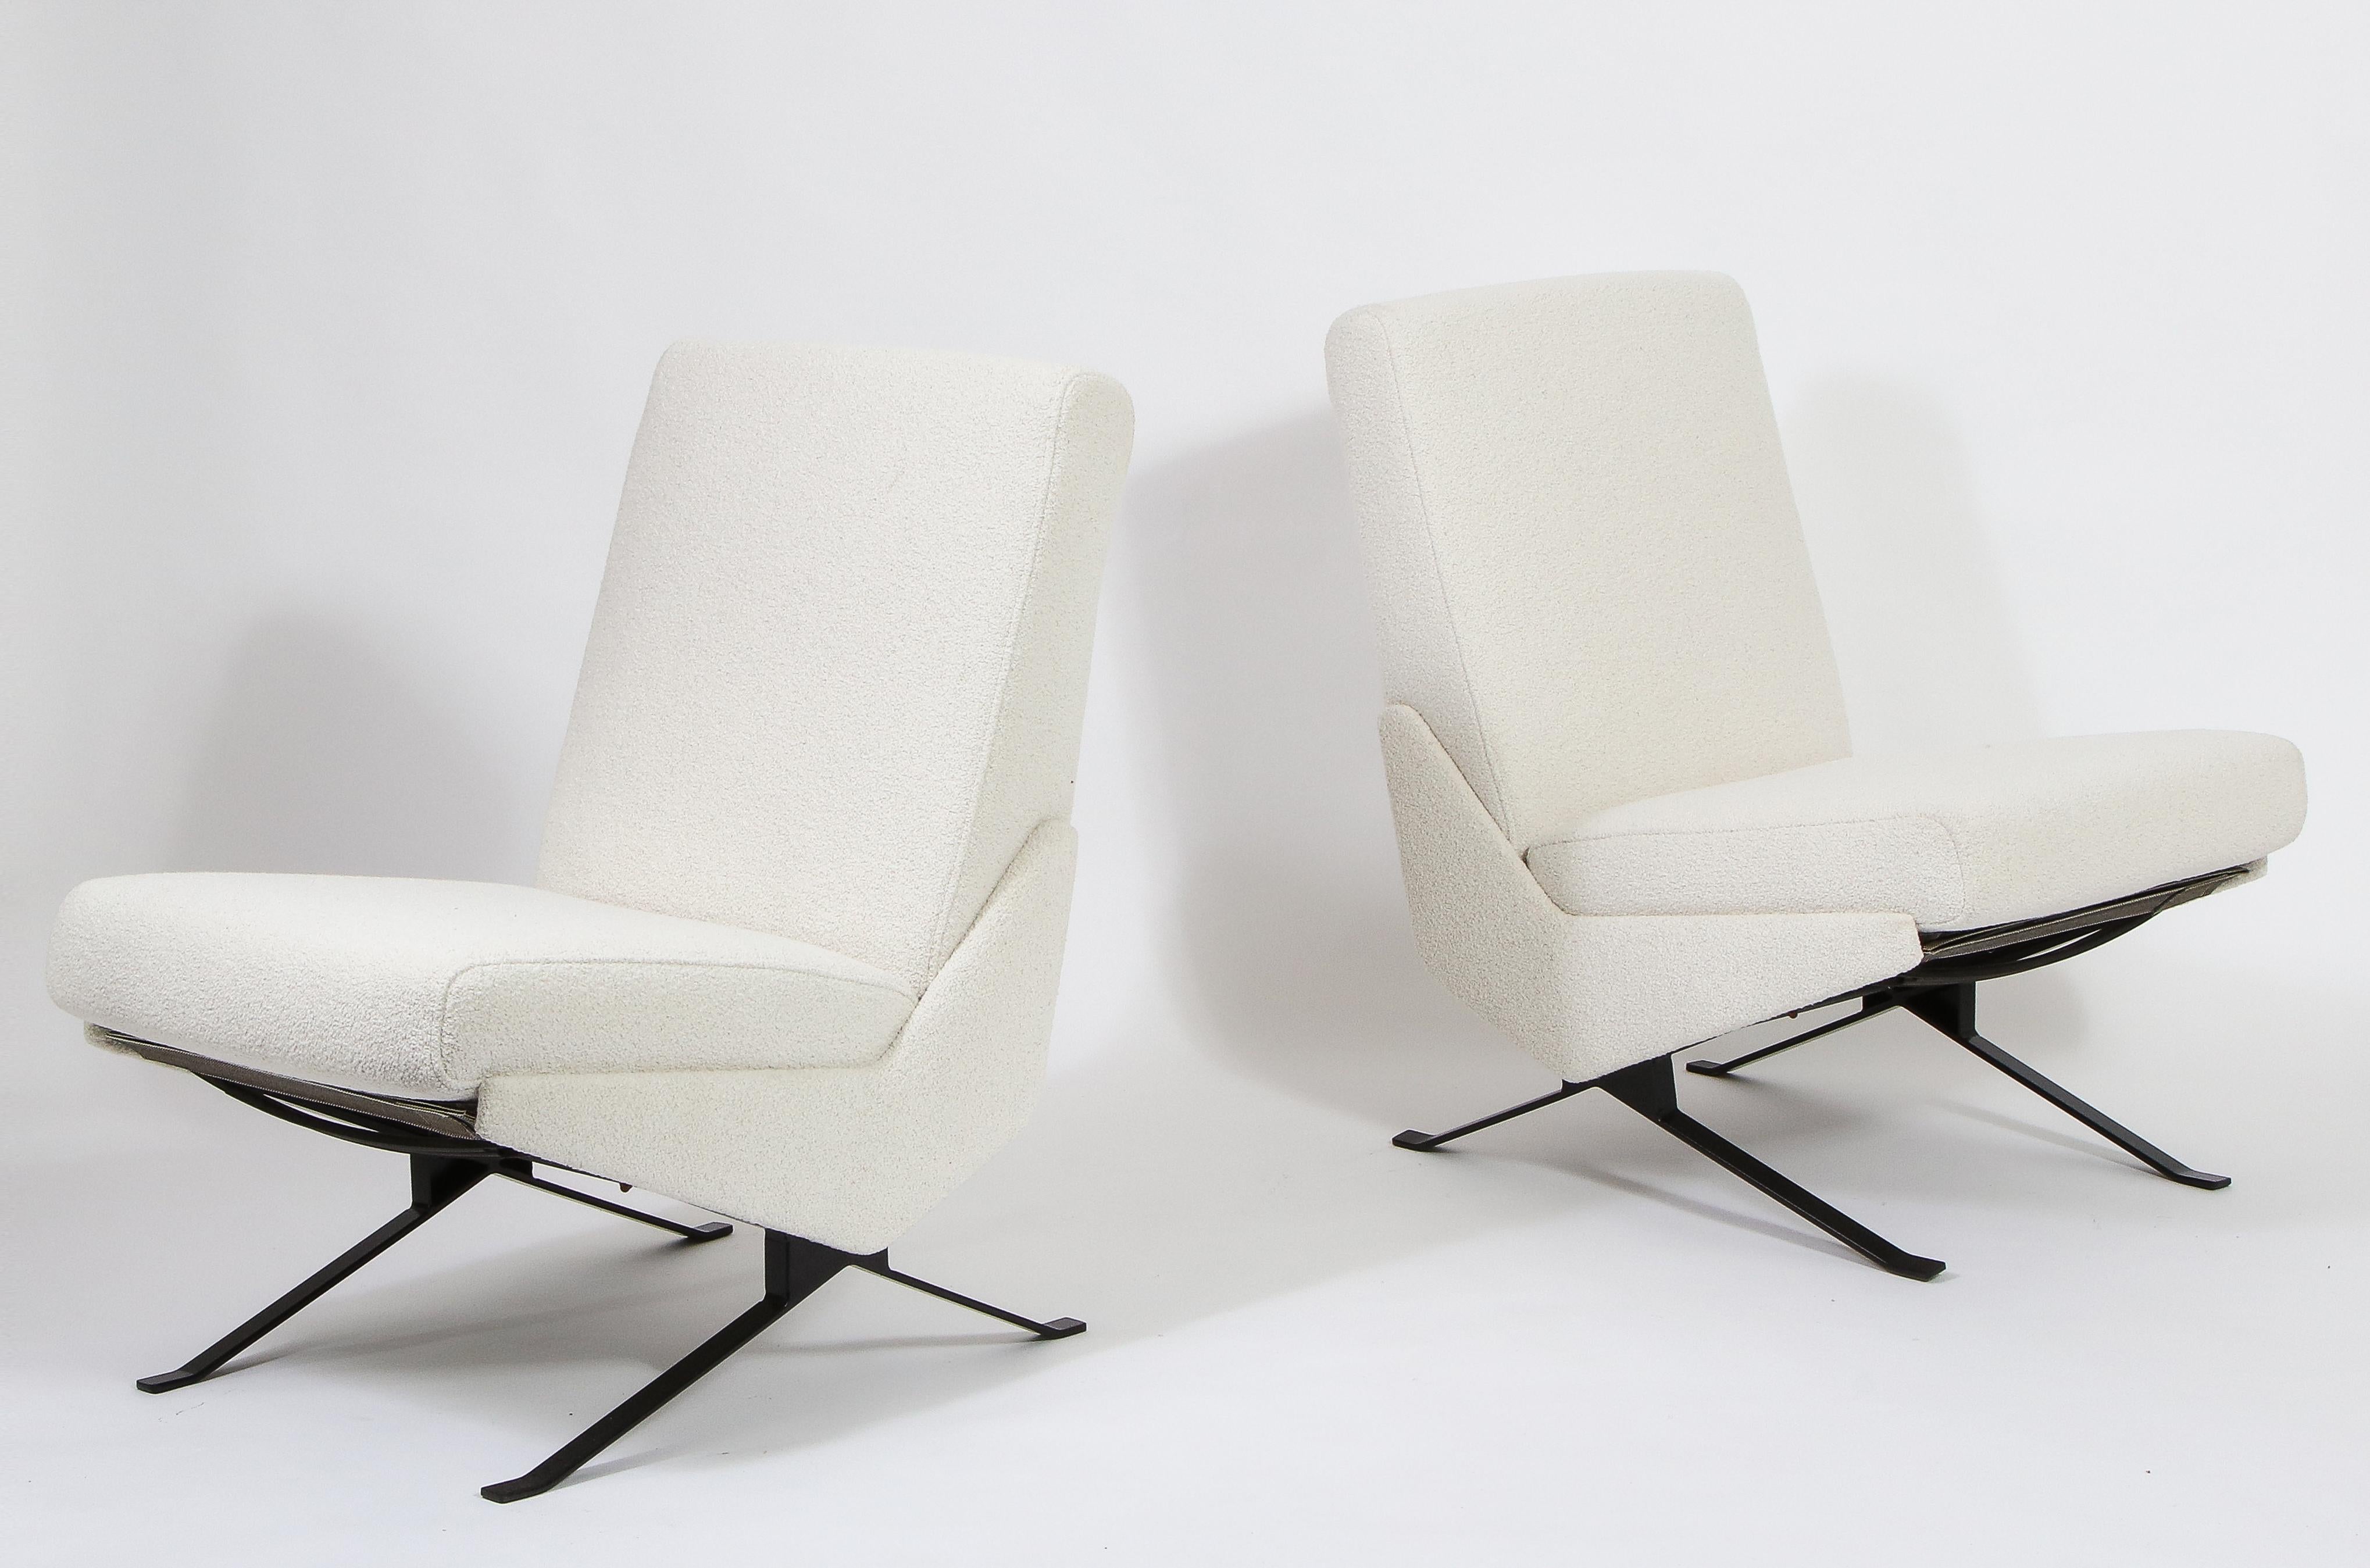 Paire de fauteuils Troika de Pierre Guariche. Ce modèle est la variante la moins vue, sans bras, sur des pieds en acier plat émaillé. A noter, les entretoises entre les pieds et le cadre de la chaise en forme de nœud papillon asymétrique. Revêtement